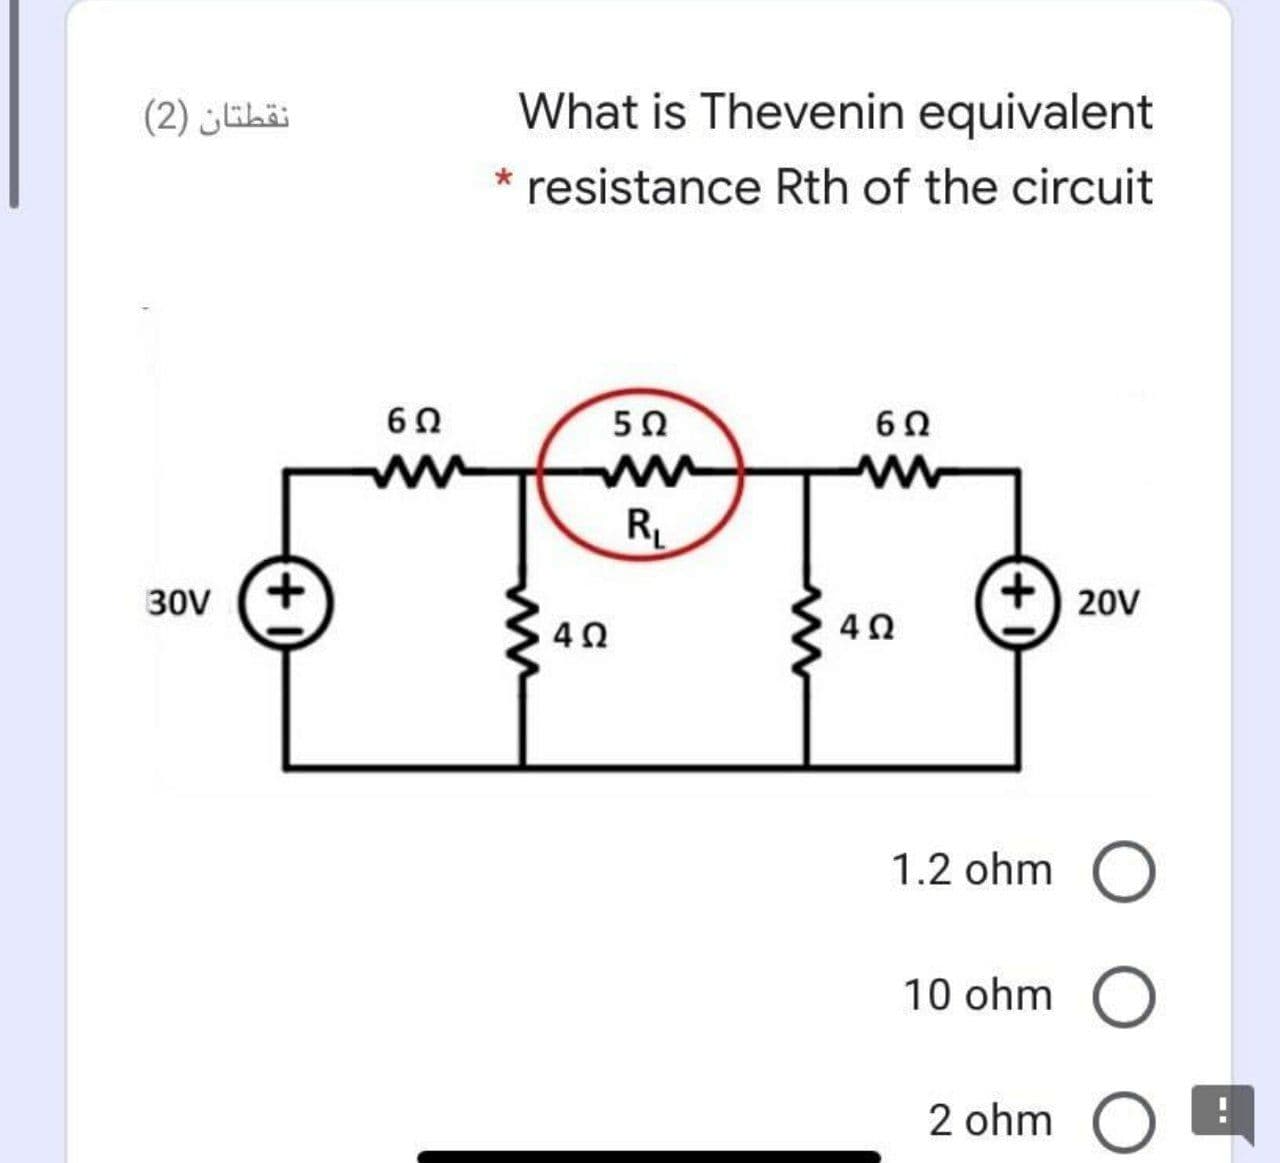 نقطتان )2(
What is Thevenin equivalent
* resistance Rth of the circuit
50
RL
30V
20V
1.2 ohm
10 ohm
2 ohm
